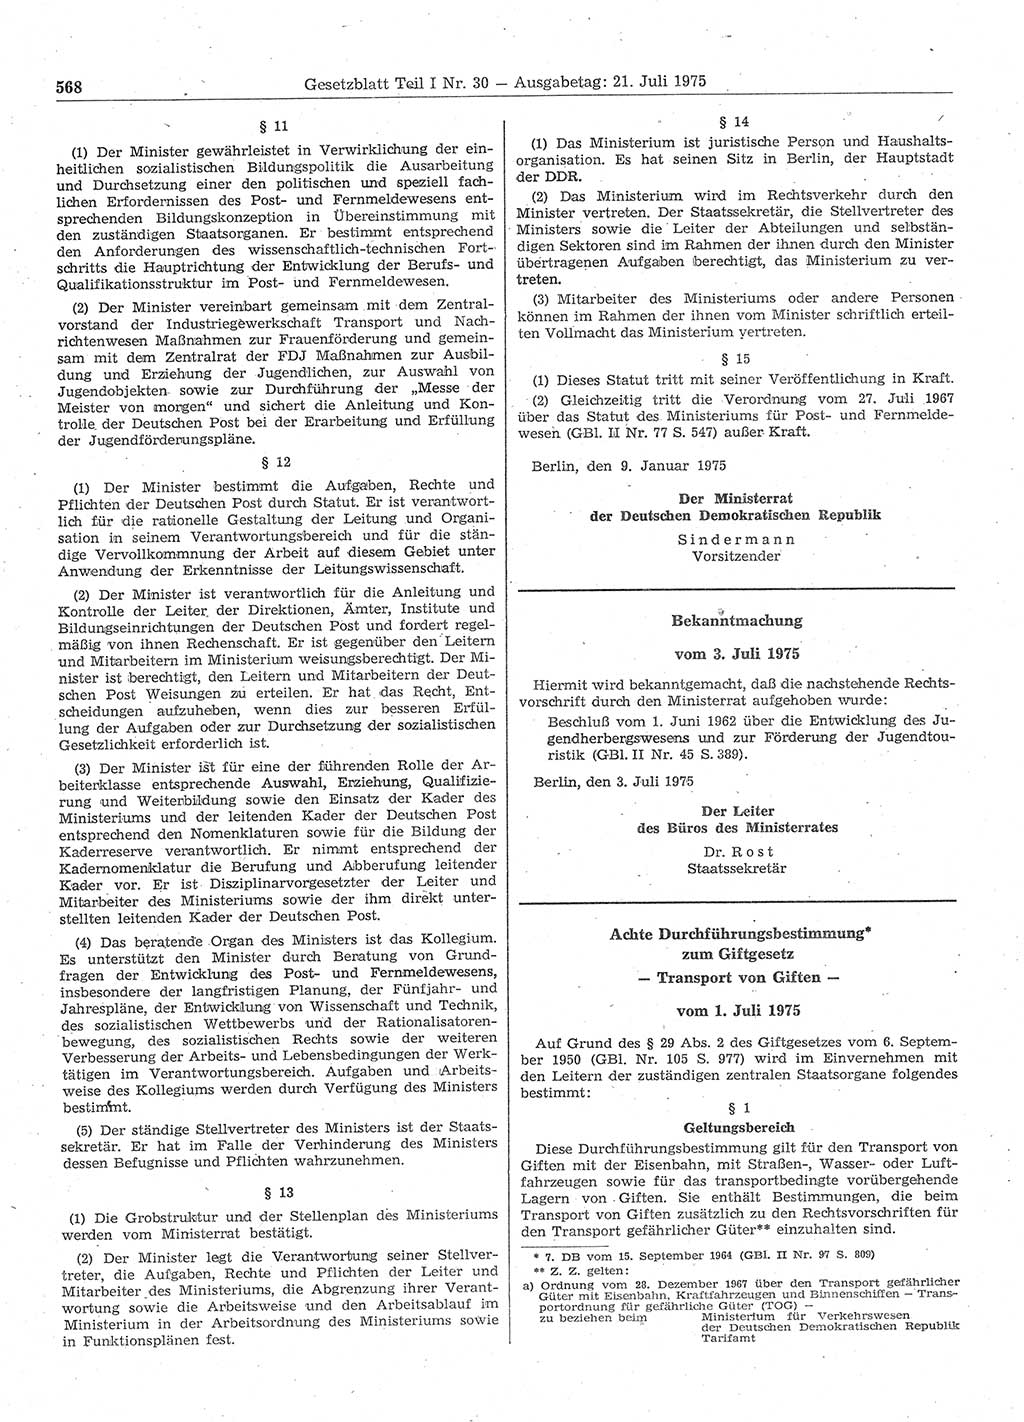 Gesetzblatt (GBl.) der Deutschen Demokratischen Republik (DDR) Teil Ⅰ 1975, Seite 568 (GBl. DDR Ⅰ 1975, S. 568)